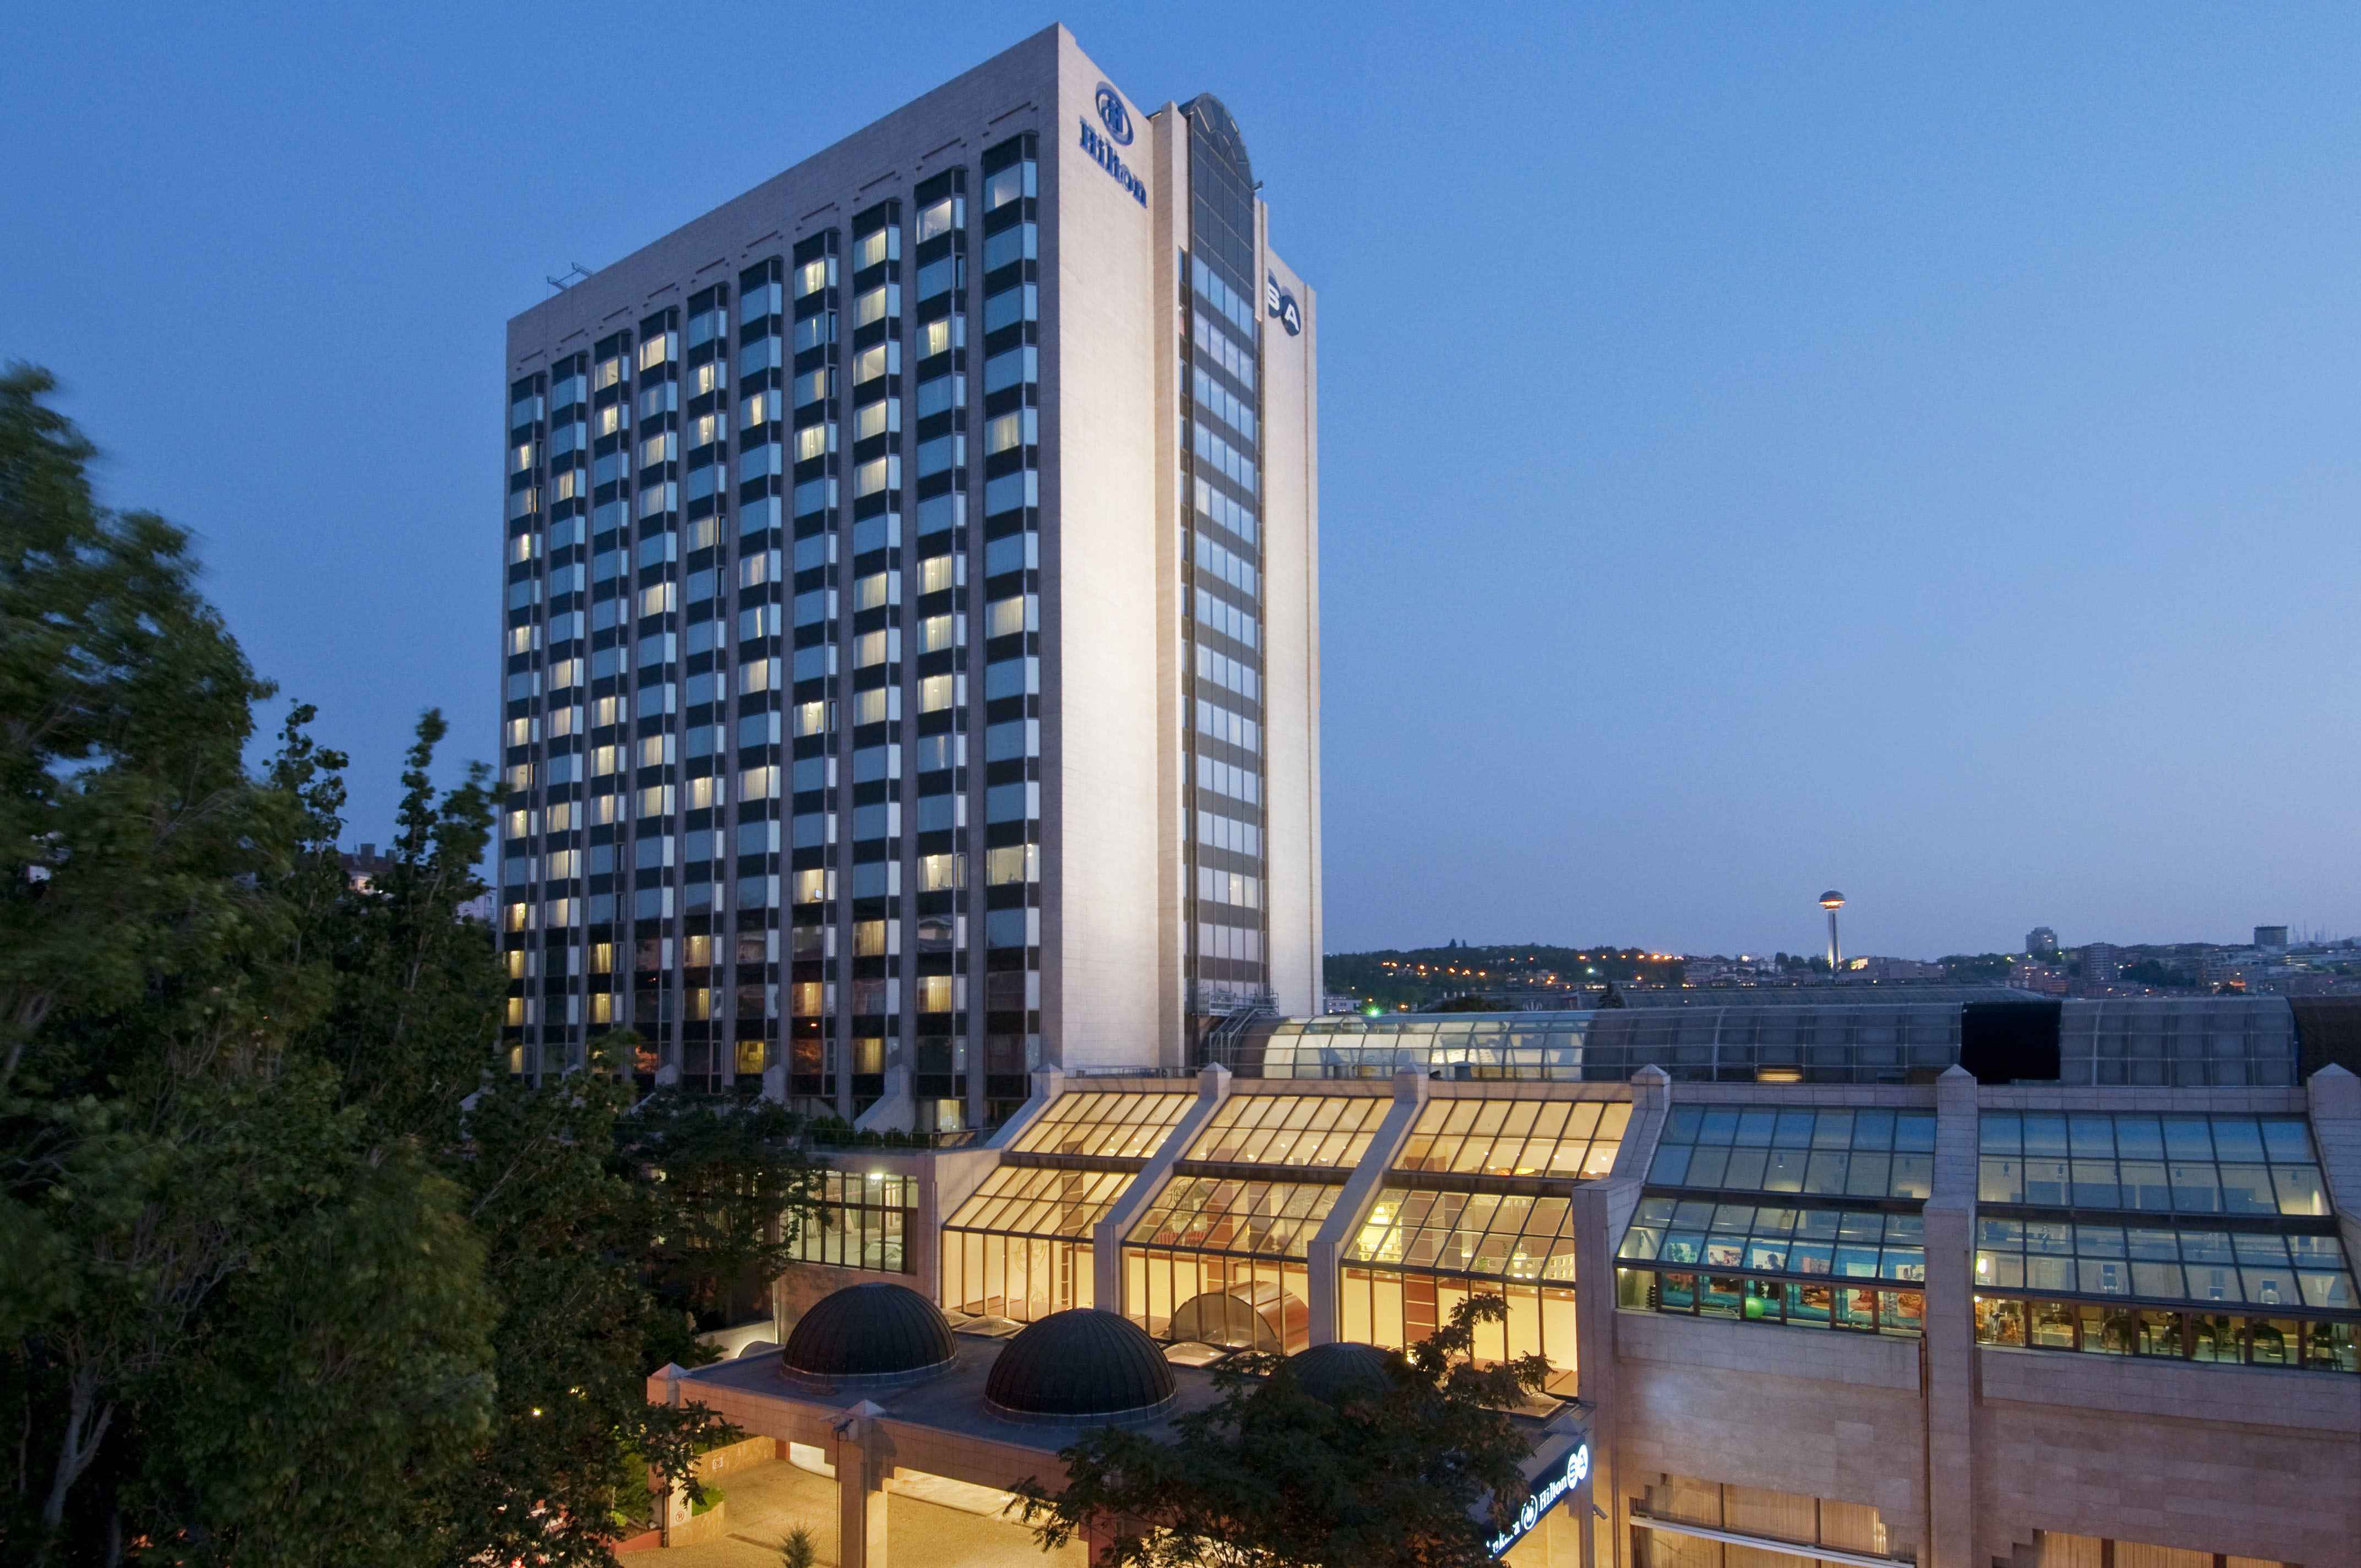 Photo of Ankara HiltonSA, Ankara, Turkey